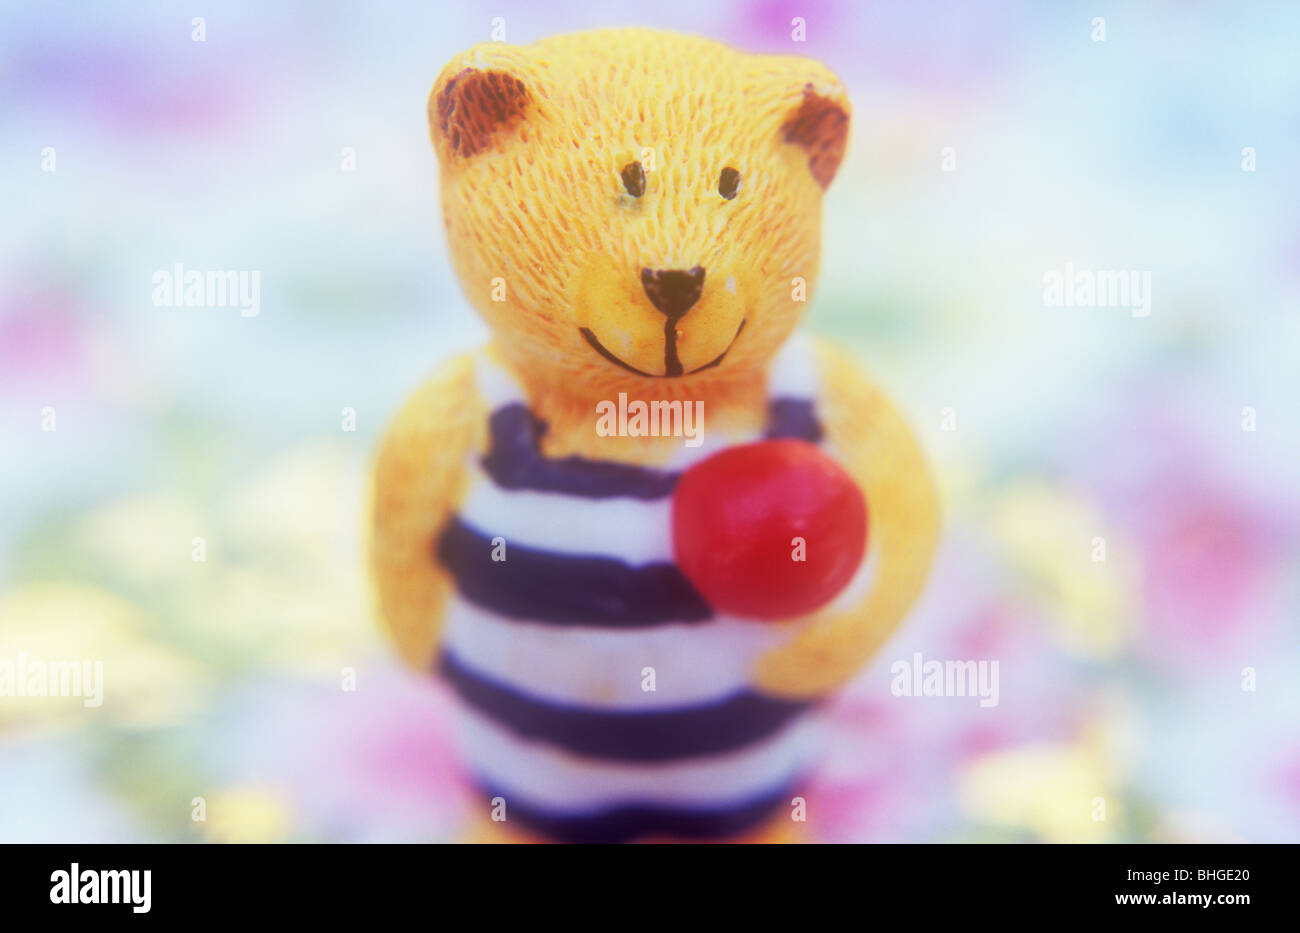 Kleinen Volumenmodell des Lächelns gelber Teddybär in gestreiften Badeanzug halten rote Kugel stehend auf Hintergrund von Pastellfarben Stockfoto